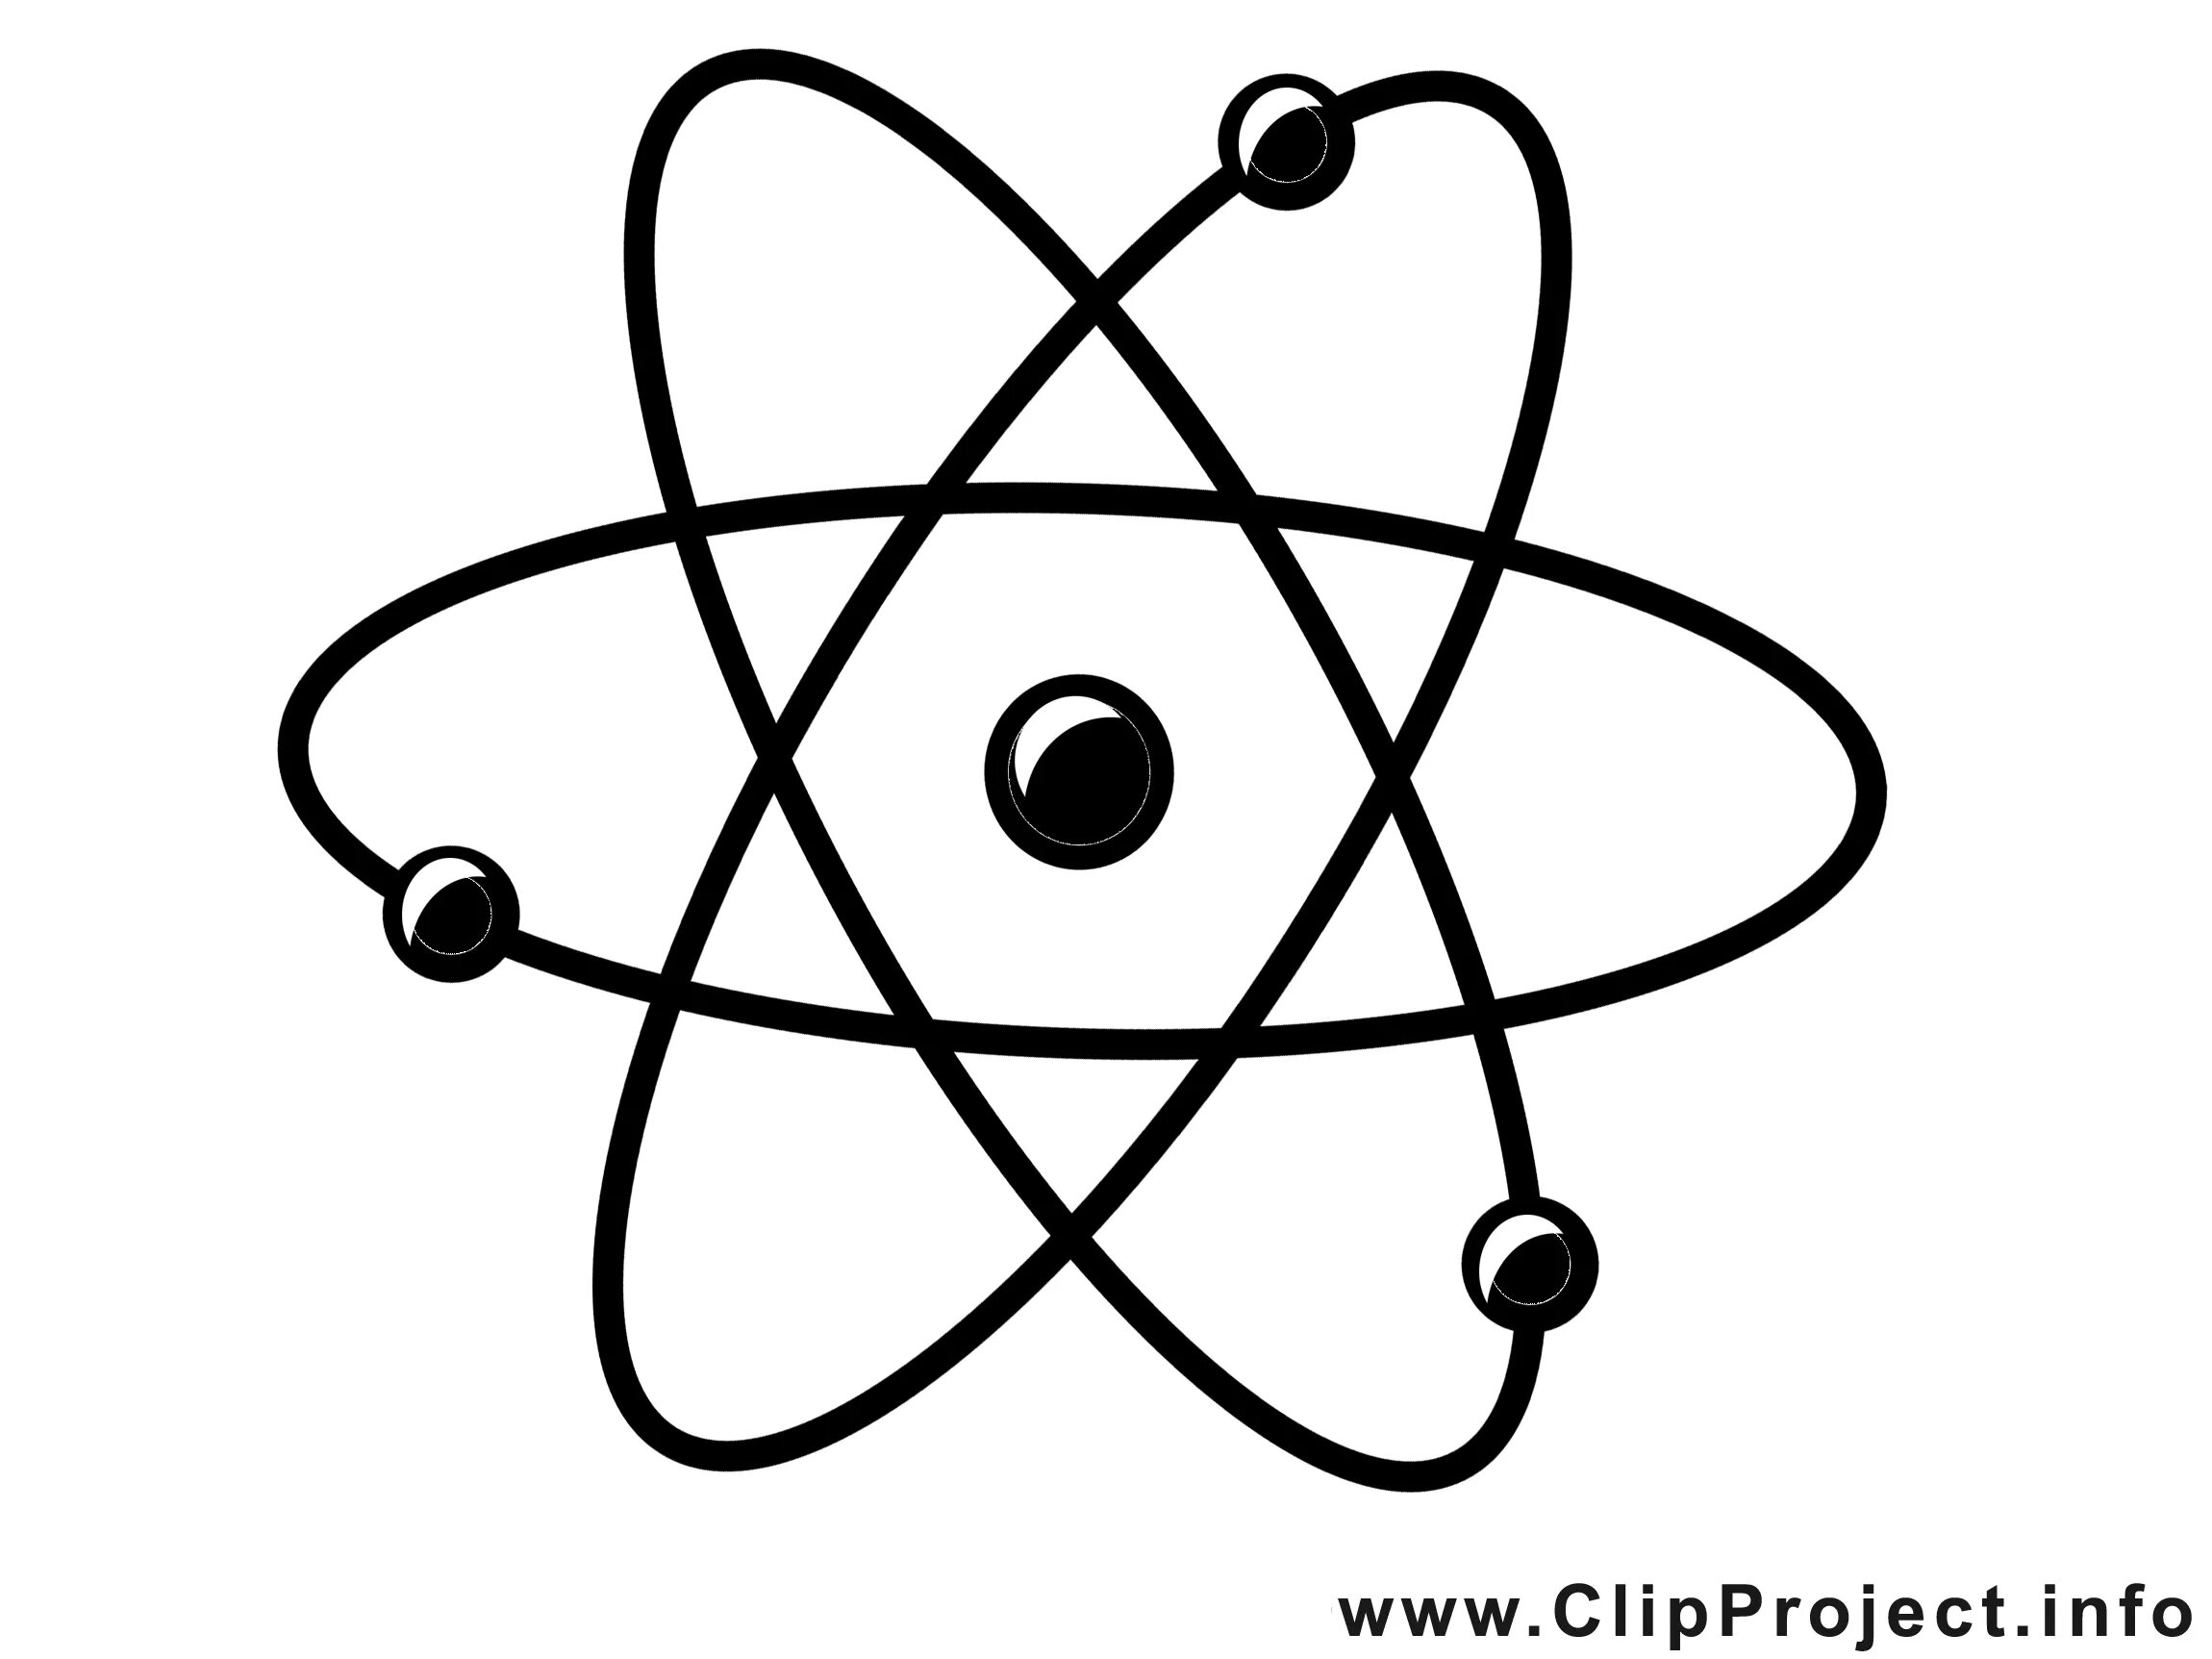 Атом. Изображение атома. Атом рисунок. Символ атома.